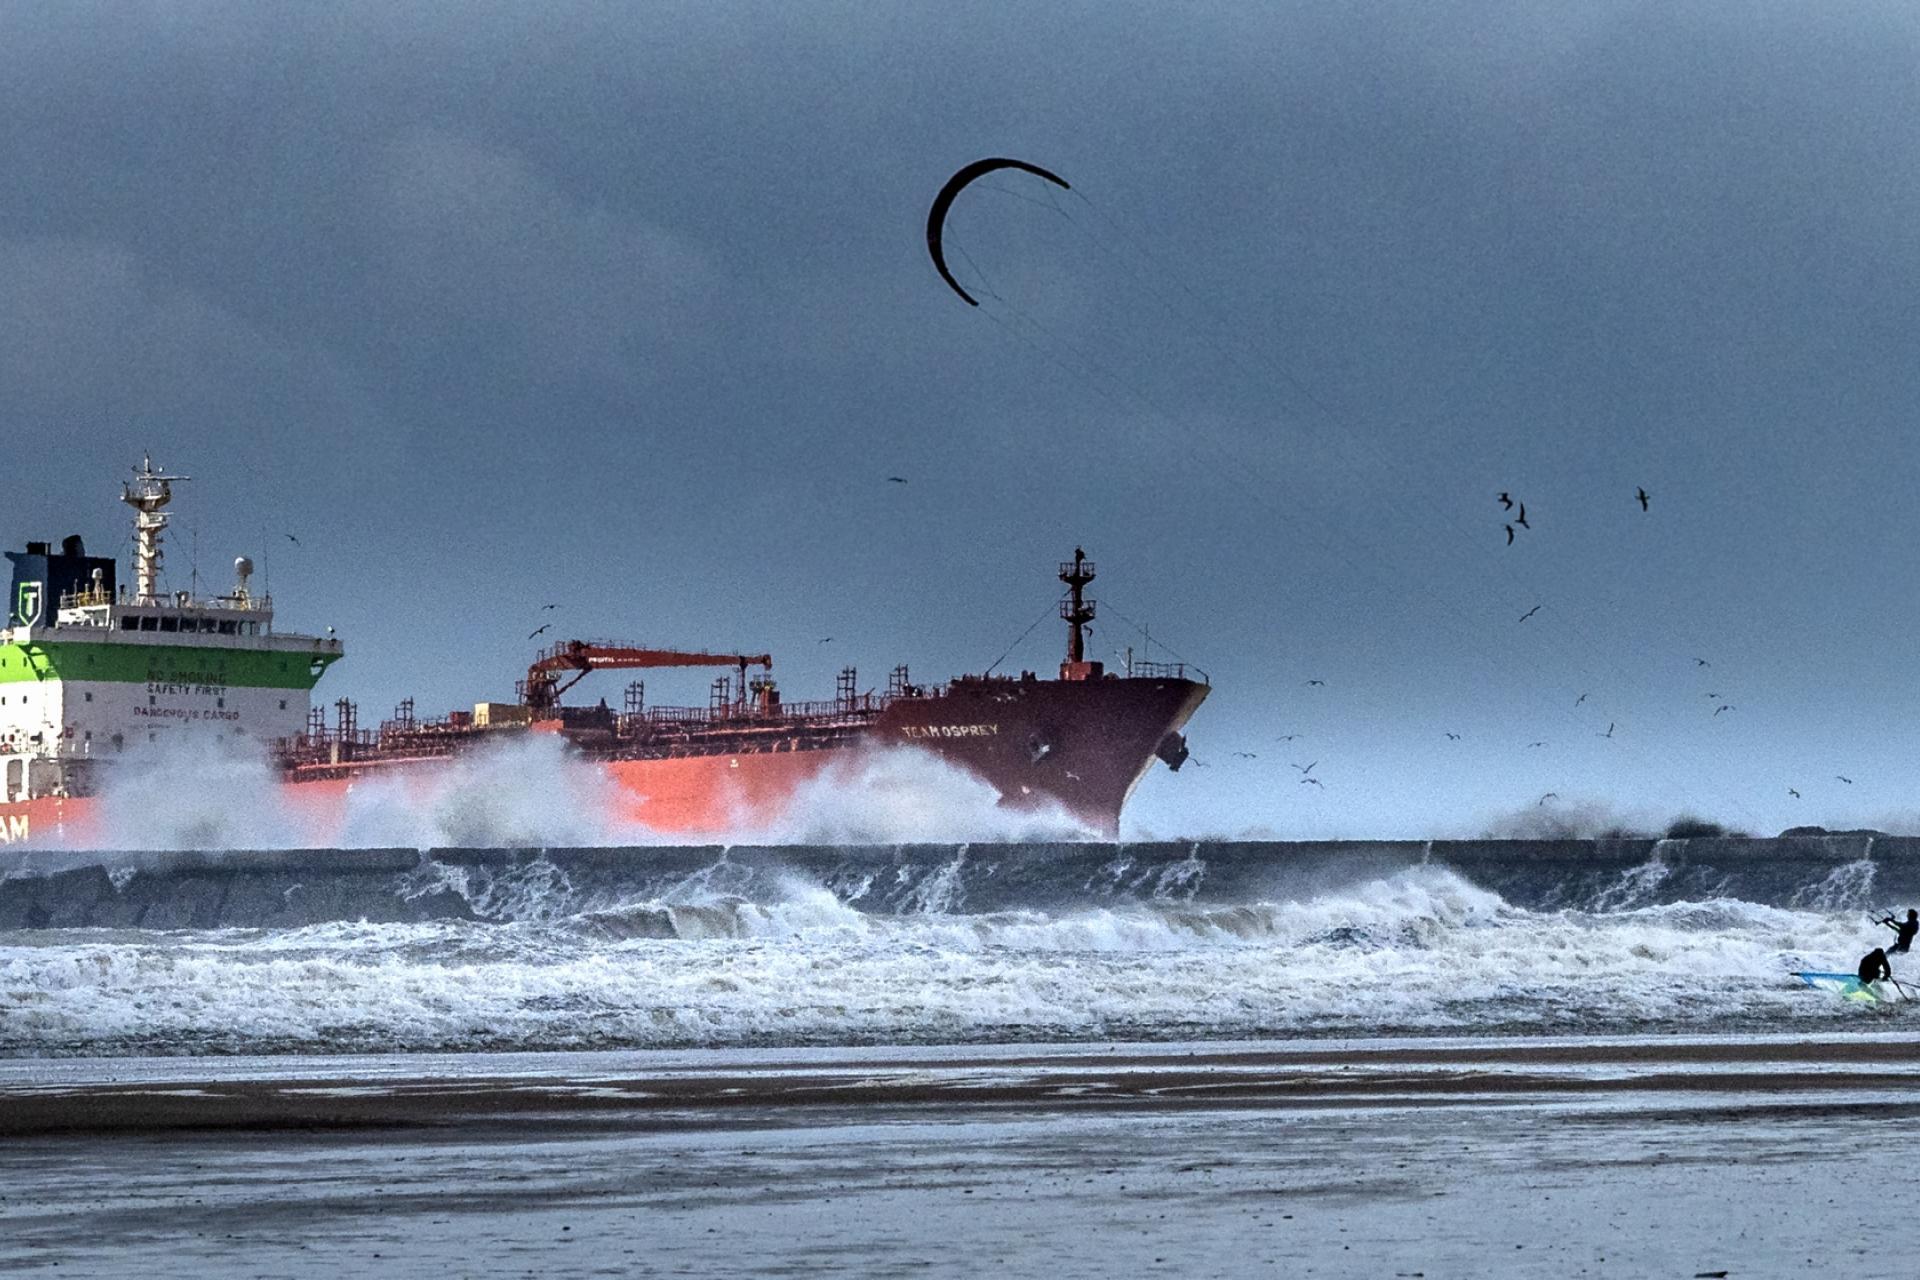 Storm bij de pier van IJmuiden: een kitesurfer en een schip vechten met de golven